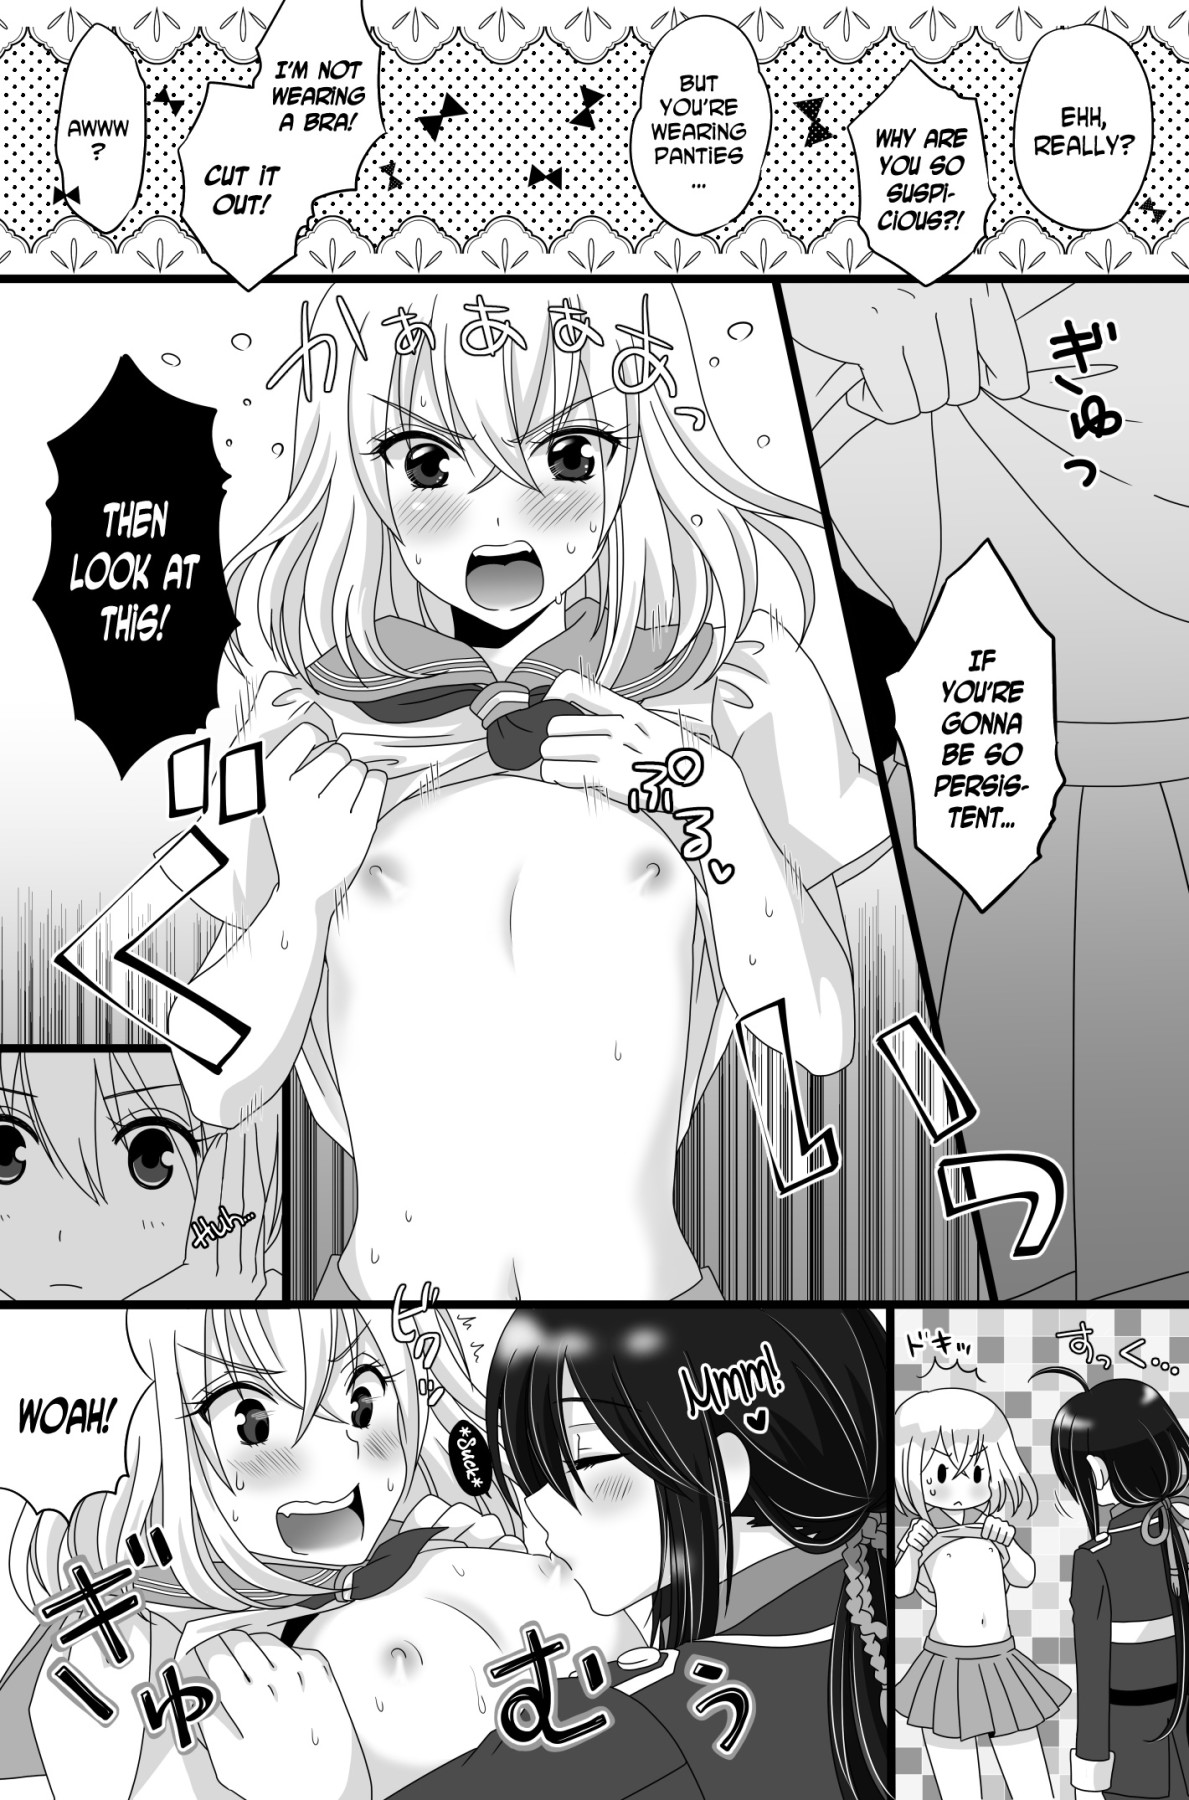 Crossdresser hentai manga